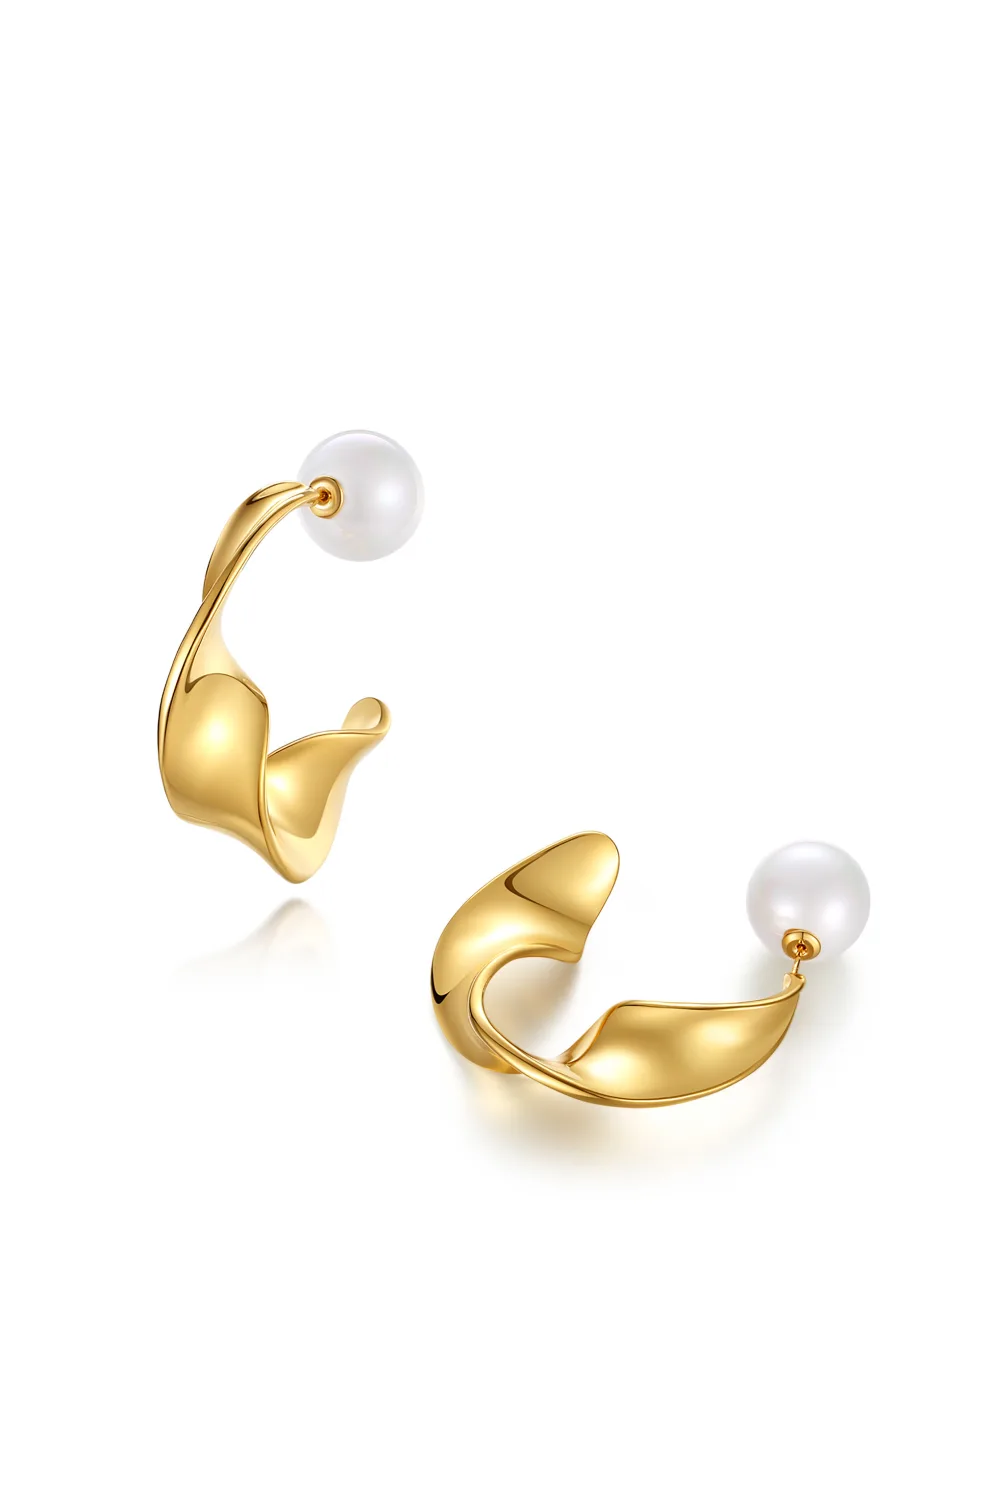 Classicharms-Boucles d'oreilles cerceau en forme de vague dorée